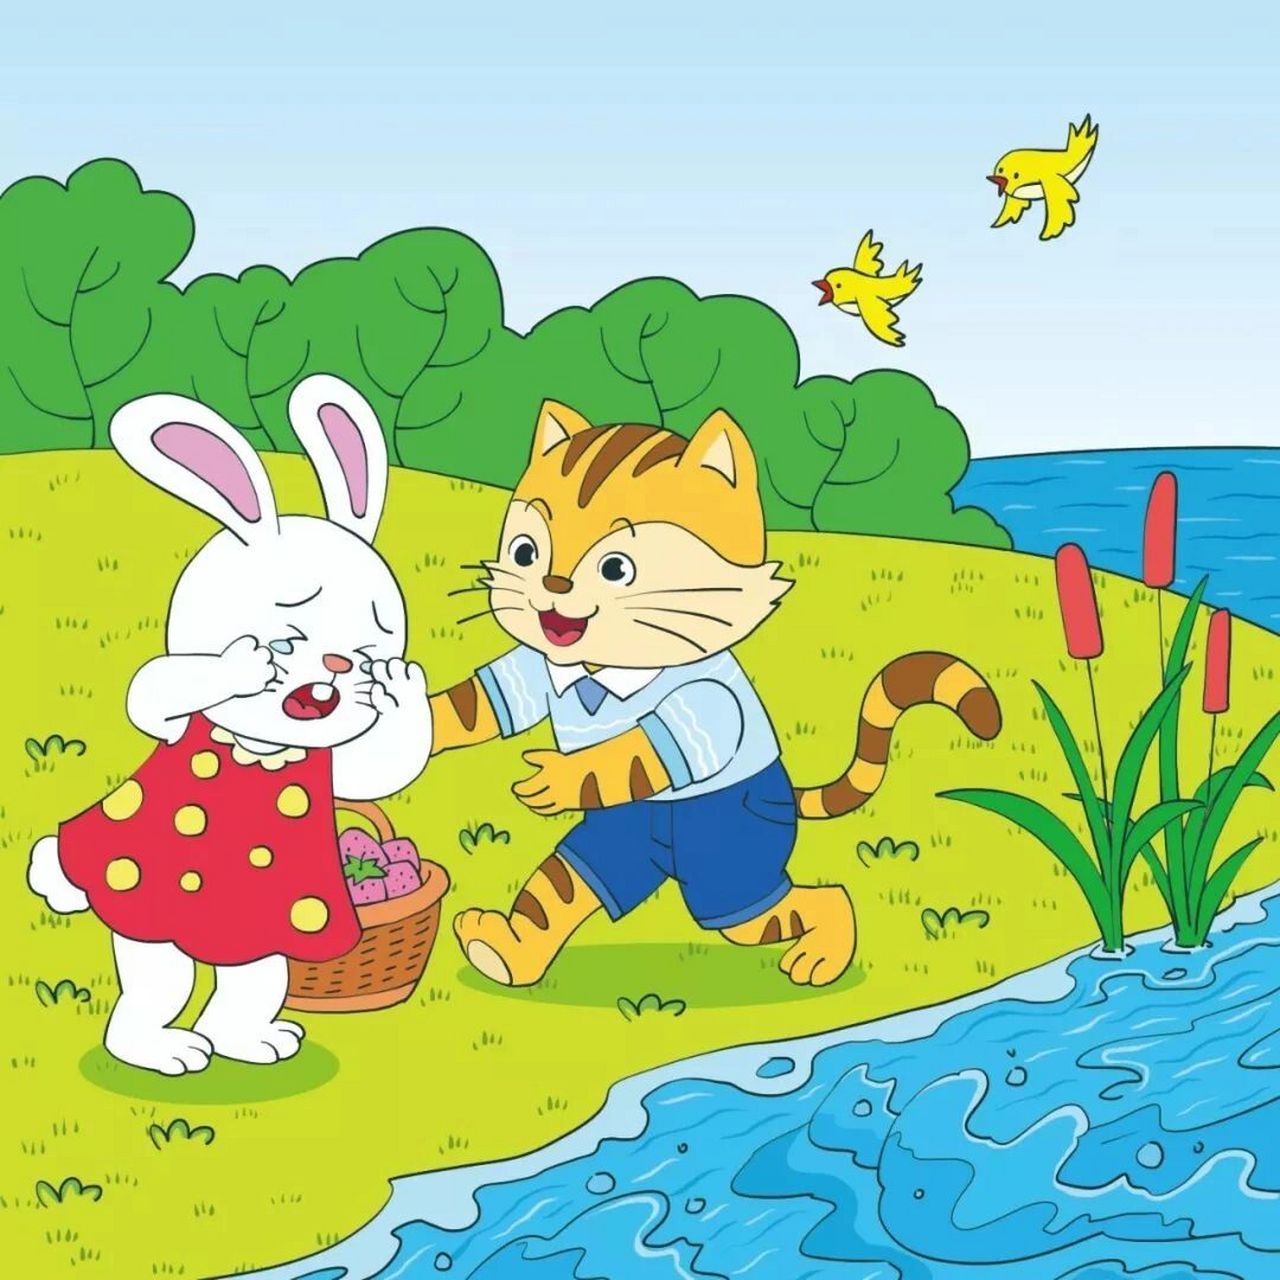 看图写话 小白兔过河 雨后初晴的一天,小白兔提着满满一篮子草莓,准备